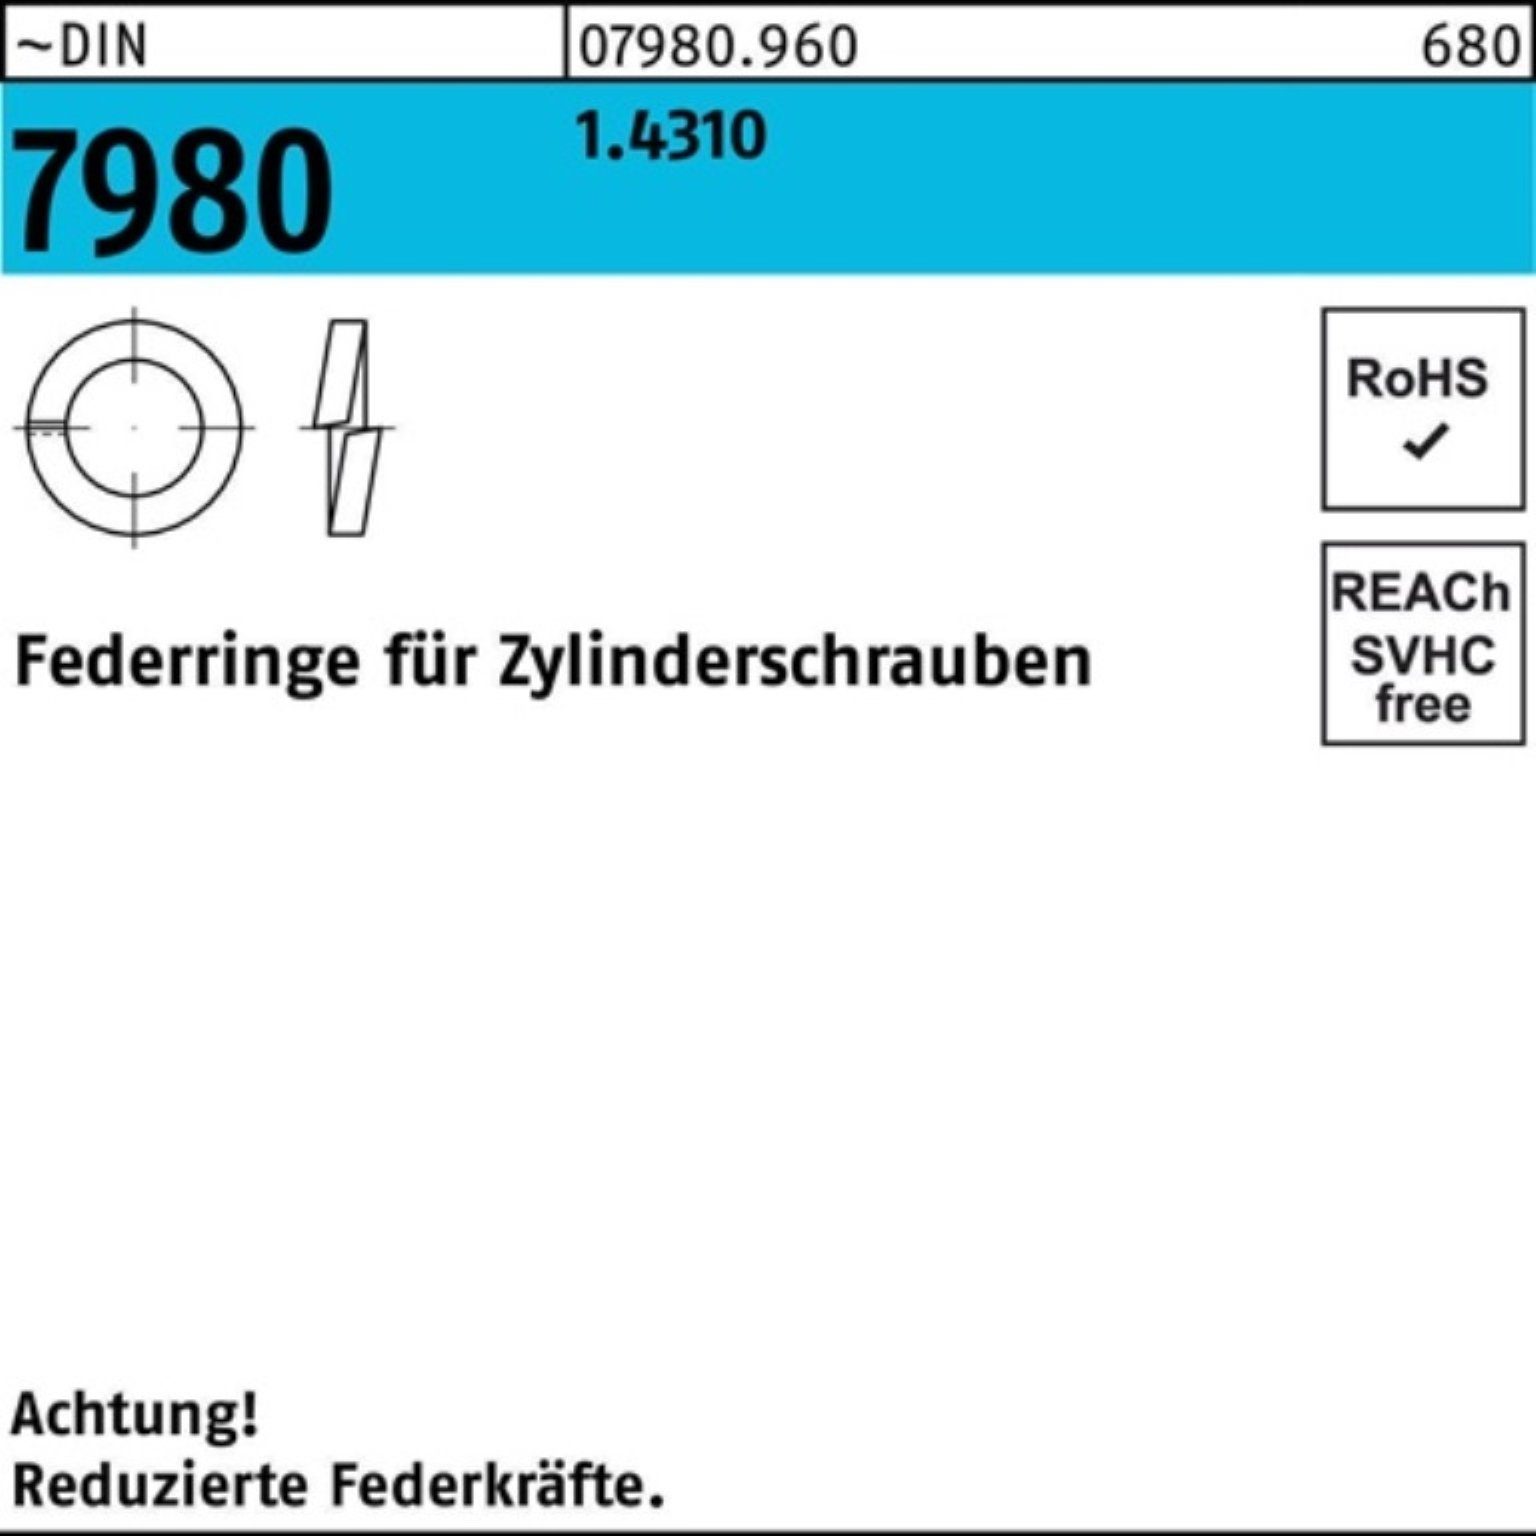 Pack 7980 Zylinderschraube Stüc 5 1.4310 Reyher DIN 1000er Federring 1000 f.Zylinderschrauben